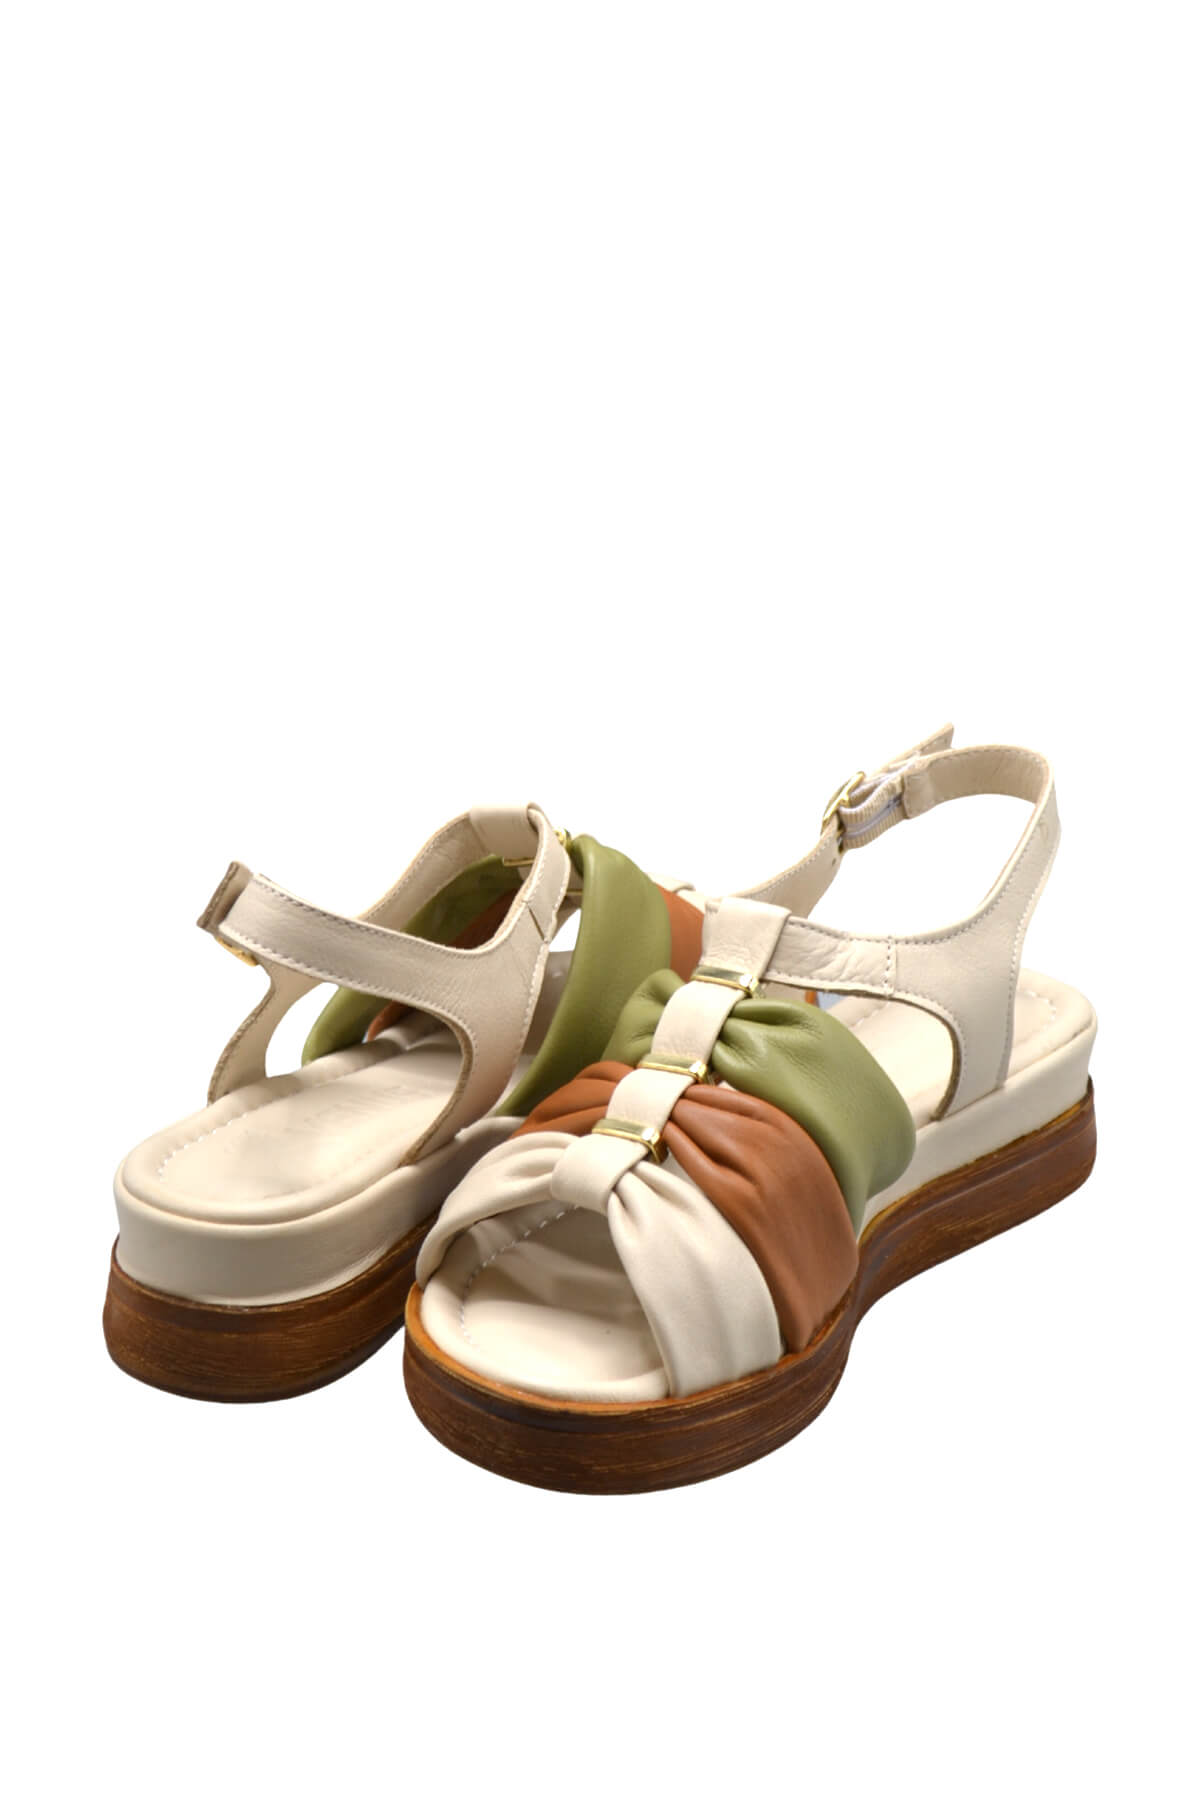 Kadın Comfort Deri Sandalet Bej 2216412Y - Thumbnail